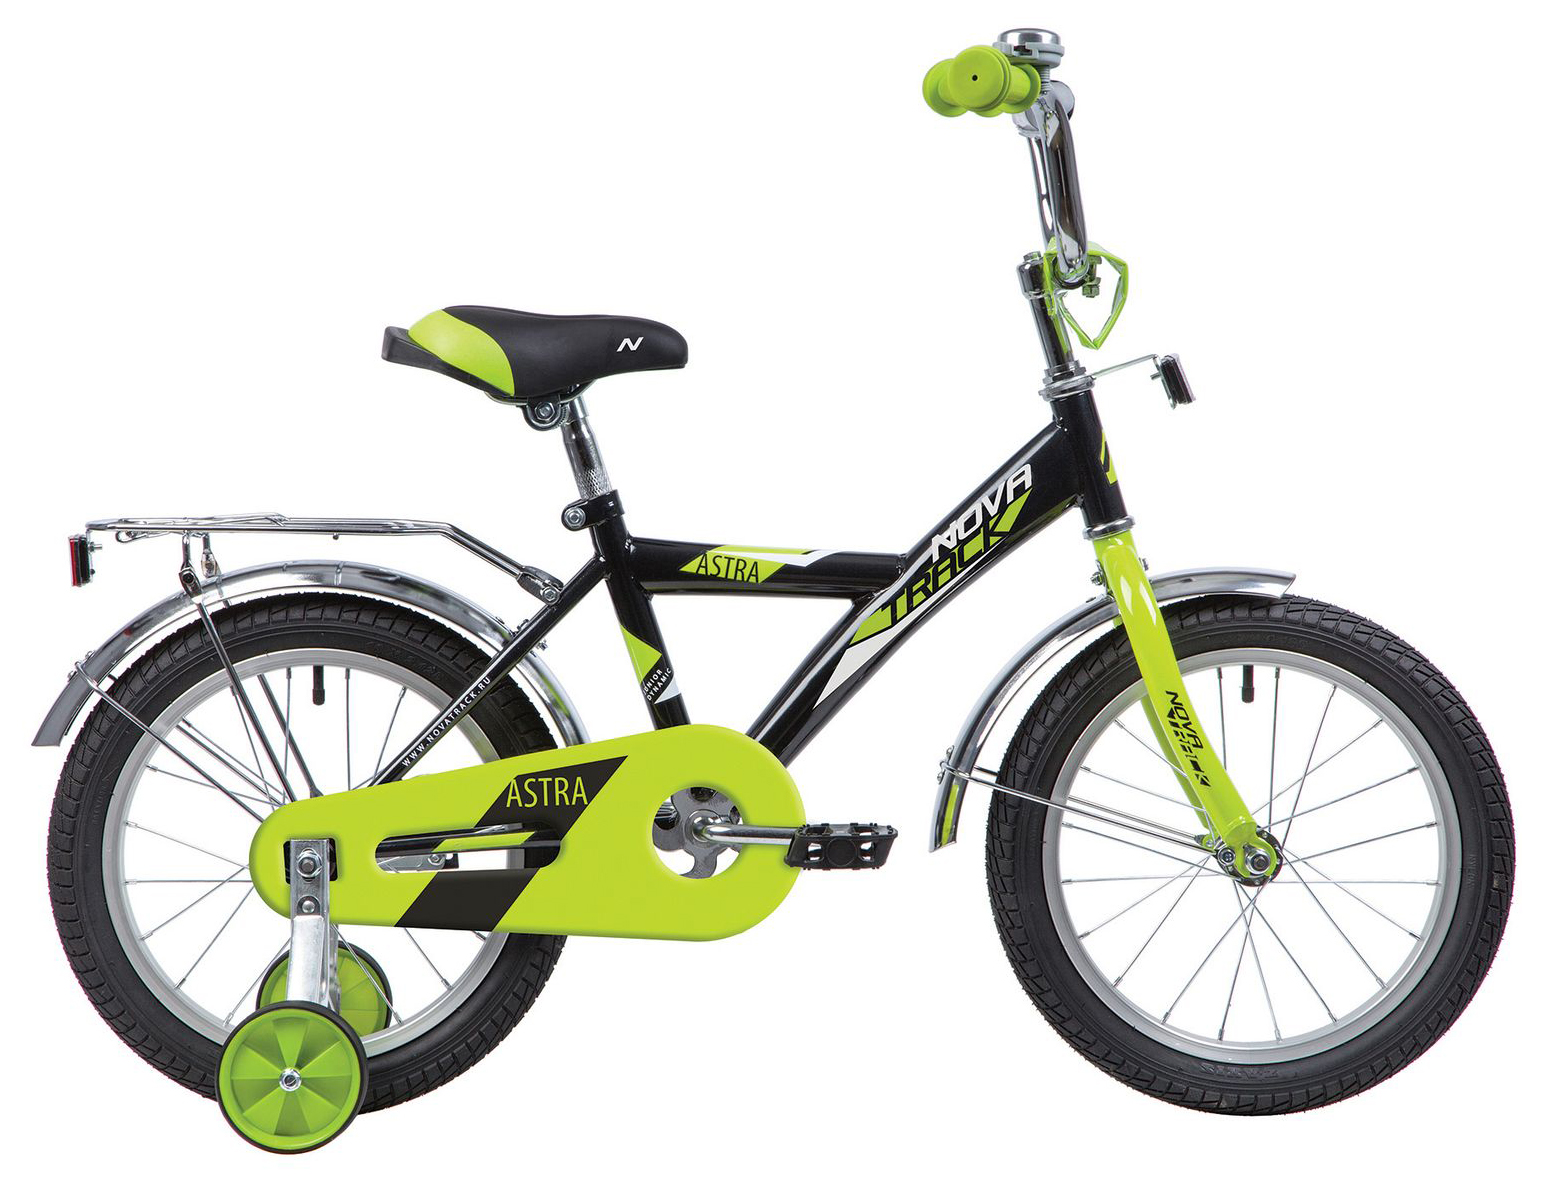  Отзывы о Детском велосипеде Novatrack Astra 16 2020